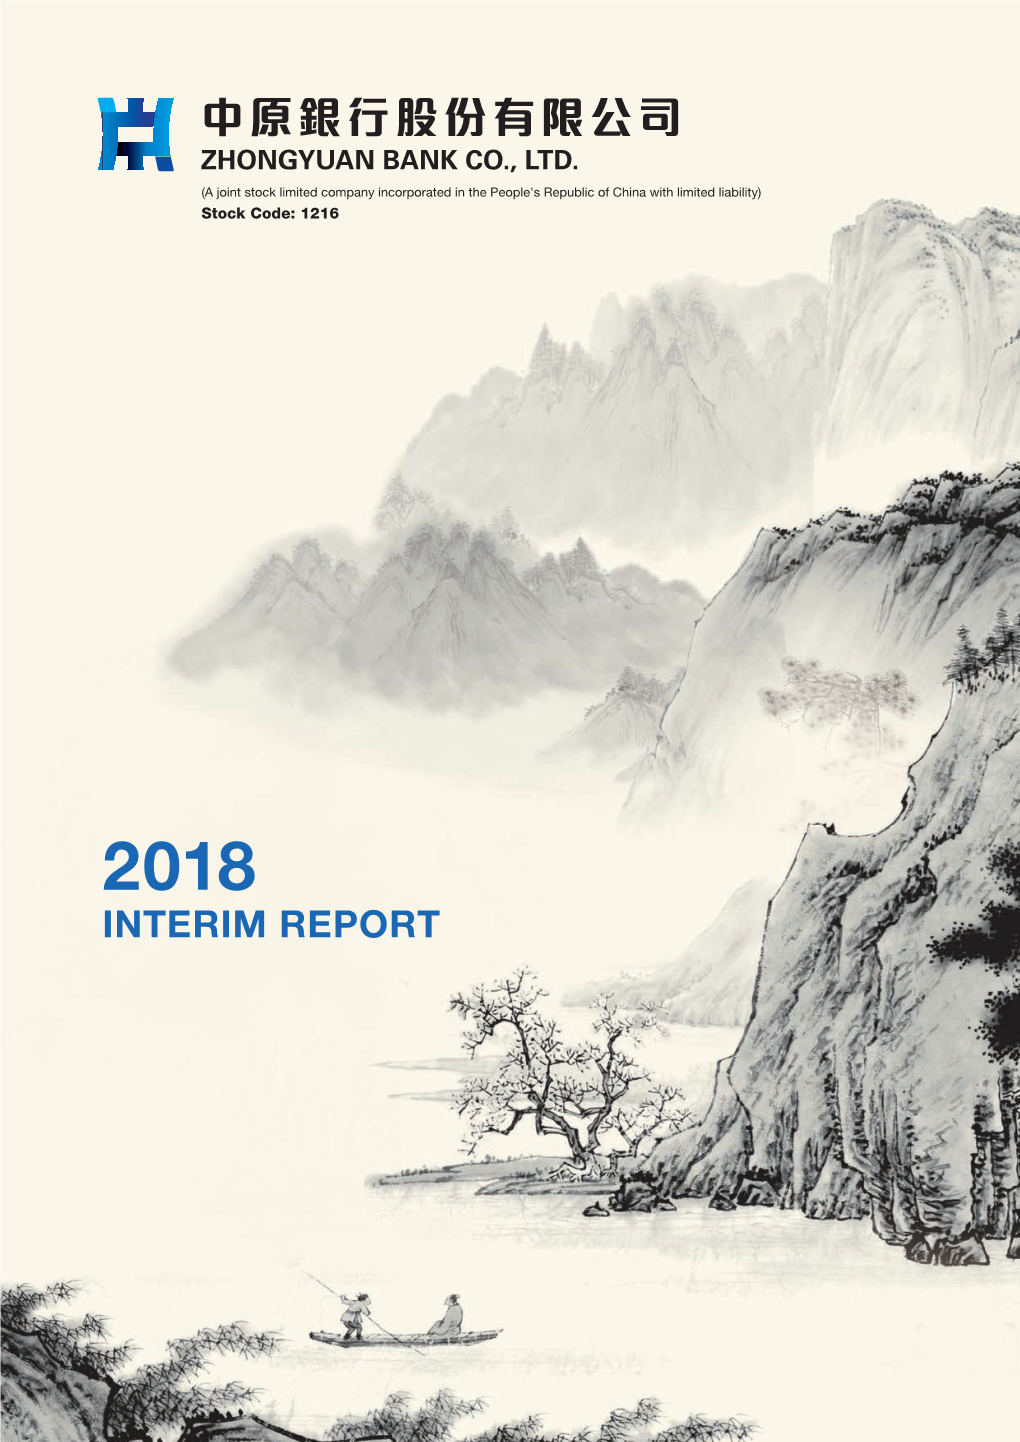 2018 INTERIM REPORT Content